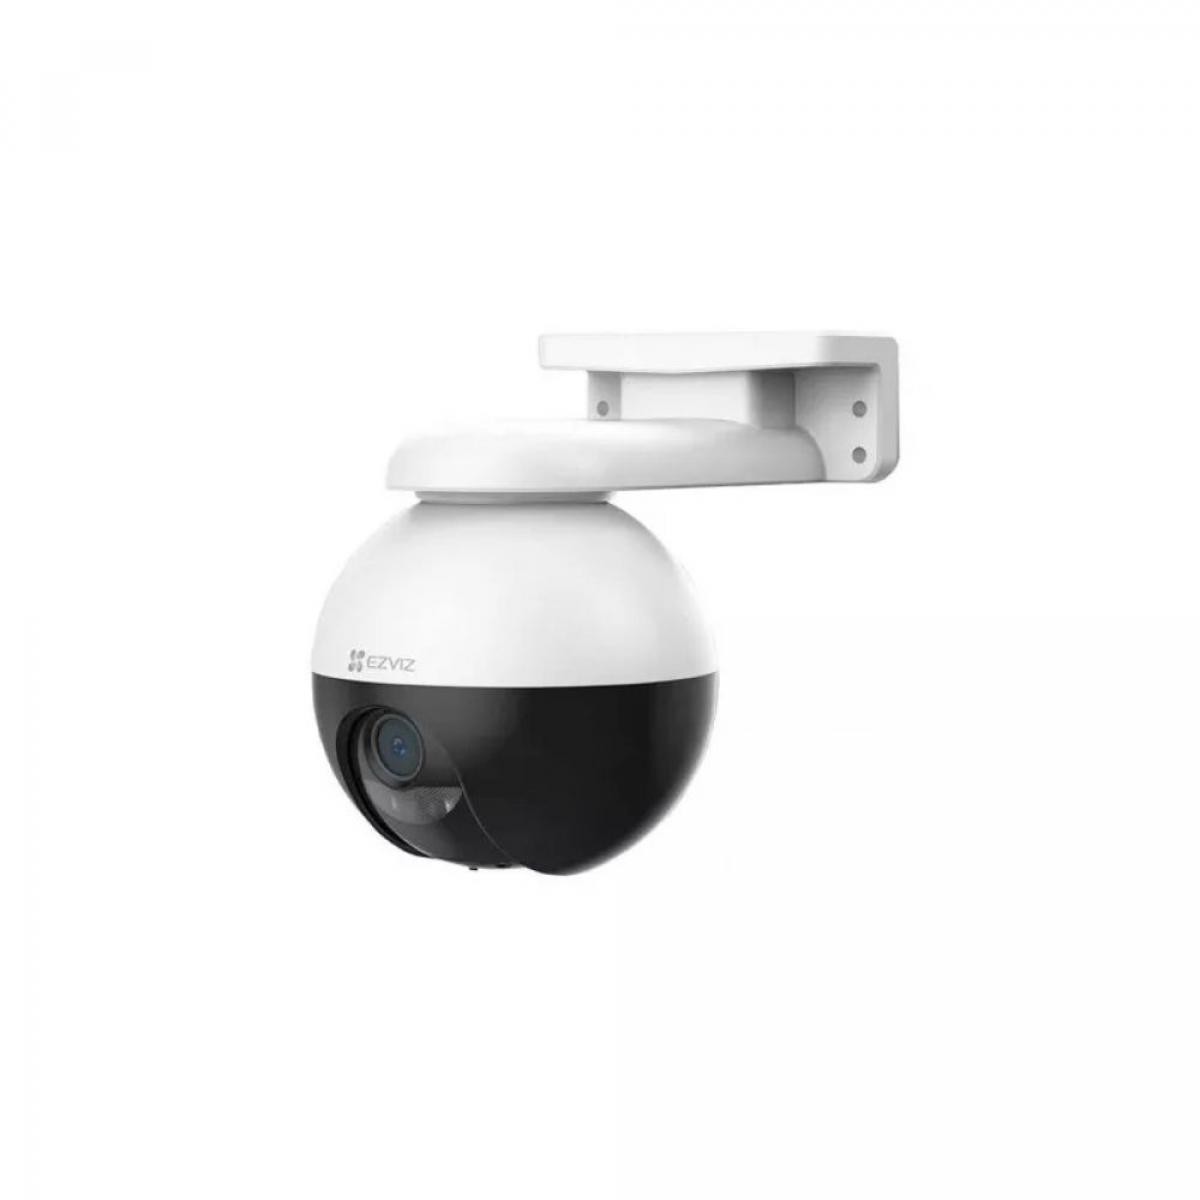 Caméra de surveillance connectée Ezviz EZVIZ Camera Wifi Exterieur C8W Motorisee  PRO 4MP 2K 2.4Ghz IP67 Sirene et Lampe. Détection de mouvement IA Vision Nocturne 30m 87° CS-C8W-A0-1H3WKFL